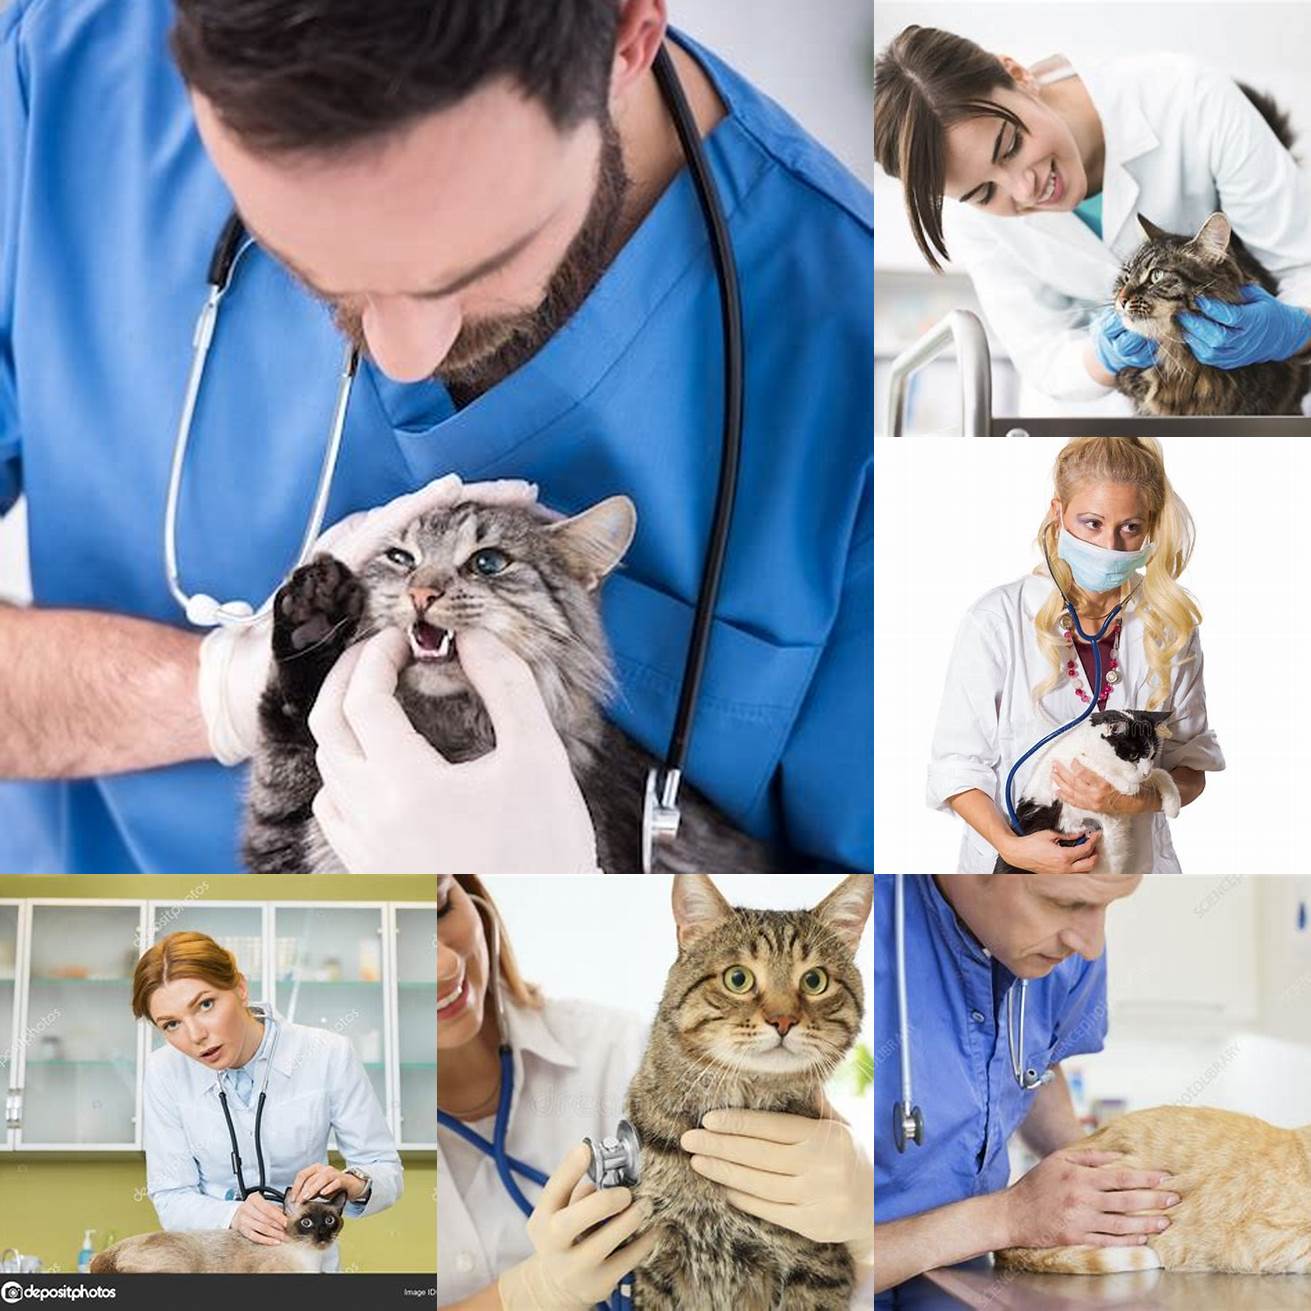 2 Veterinarian examining a cat